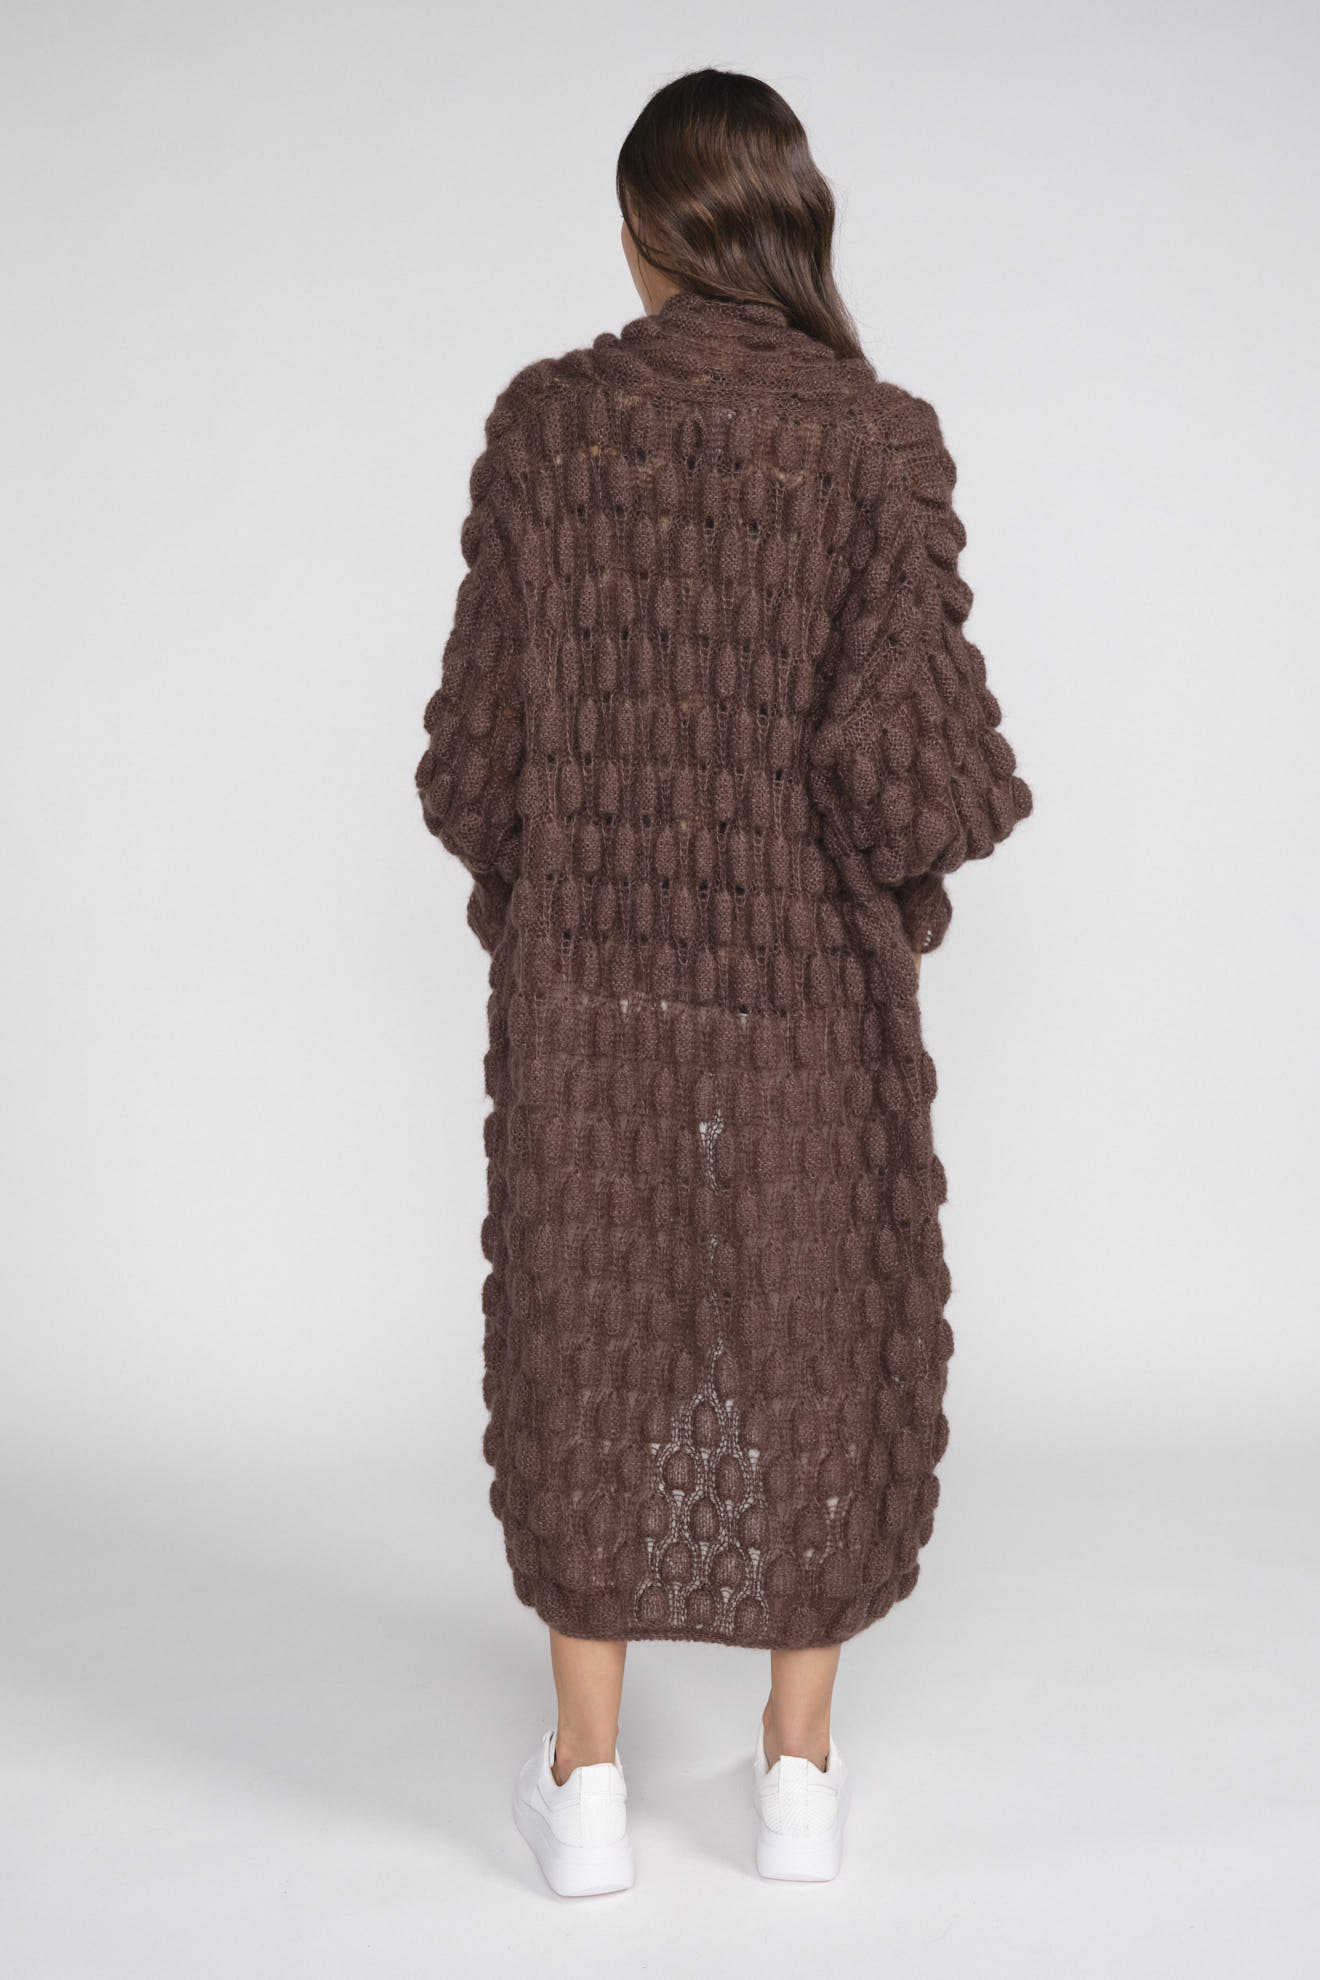 Letanne Emma Aline Lace Coat – Strickjacke aus Angorawolle und Seide braun